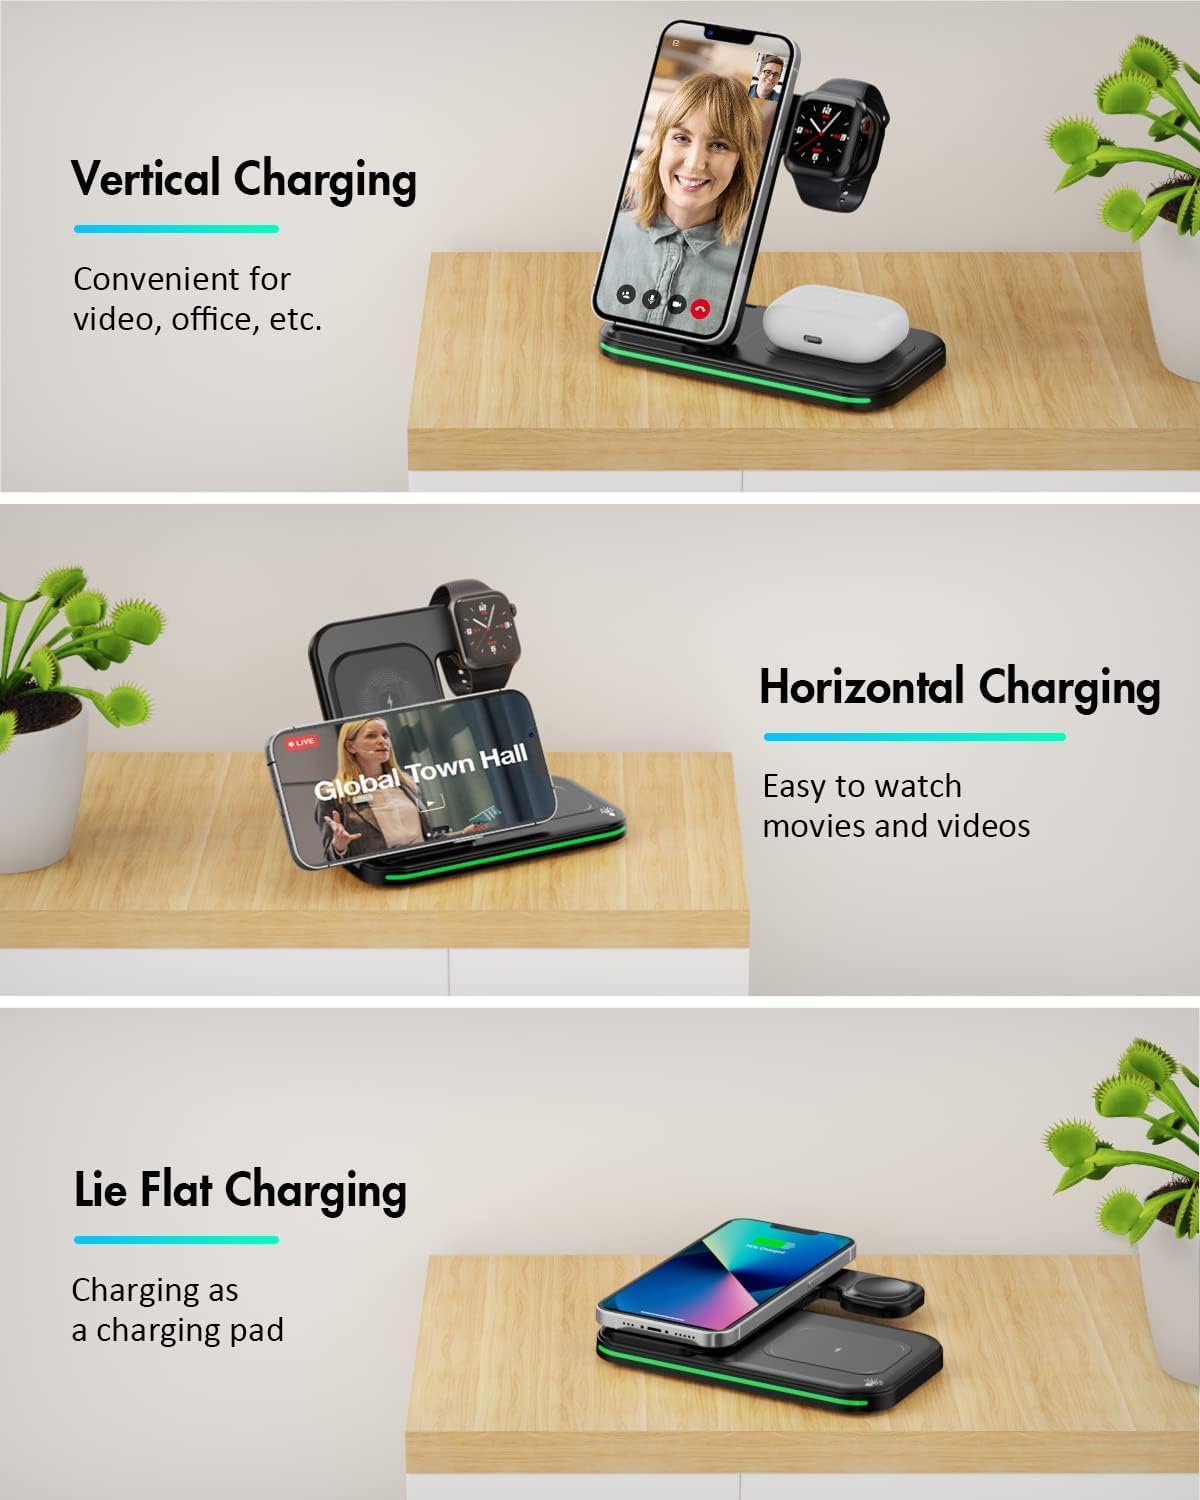 Chargeur sans fil 3 en 1, station de recharge sans fil pliable pour iPhone, iWatch et Airpods 